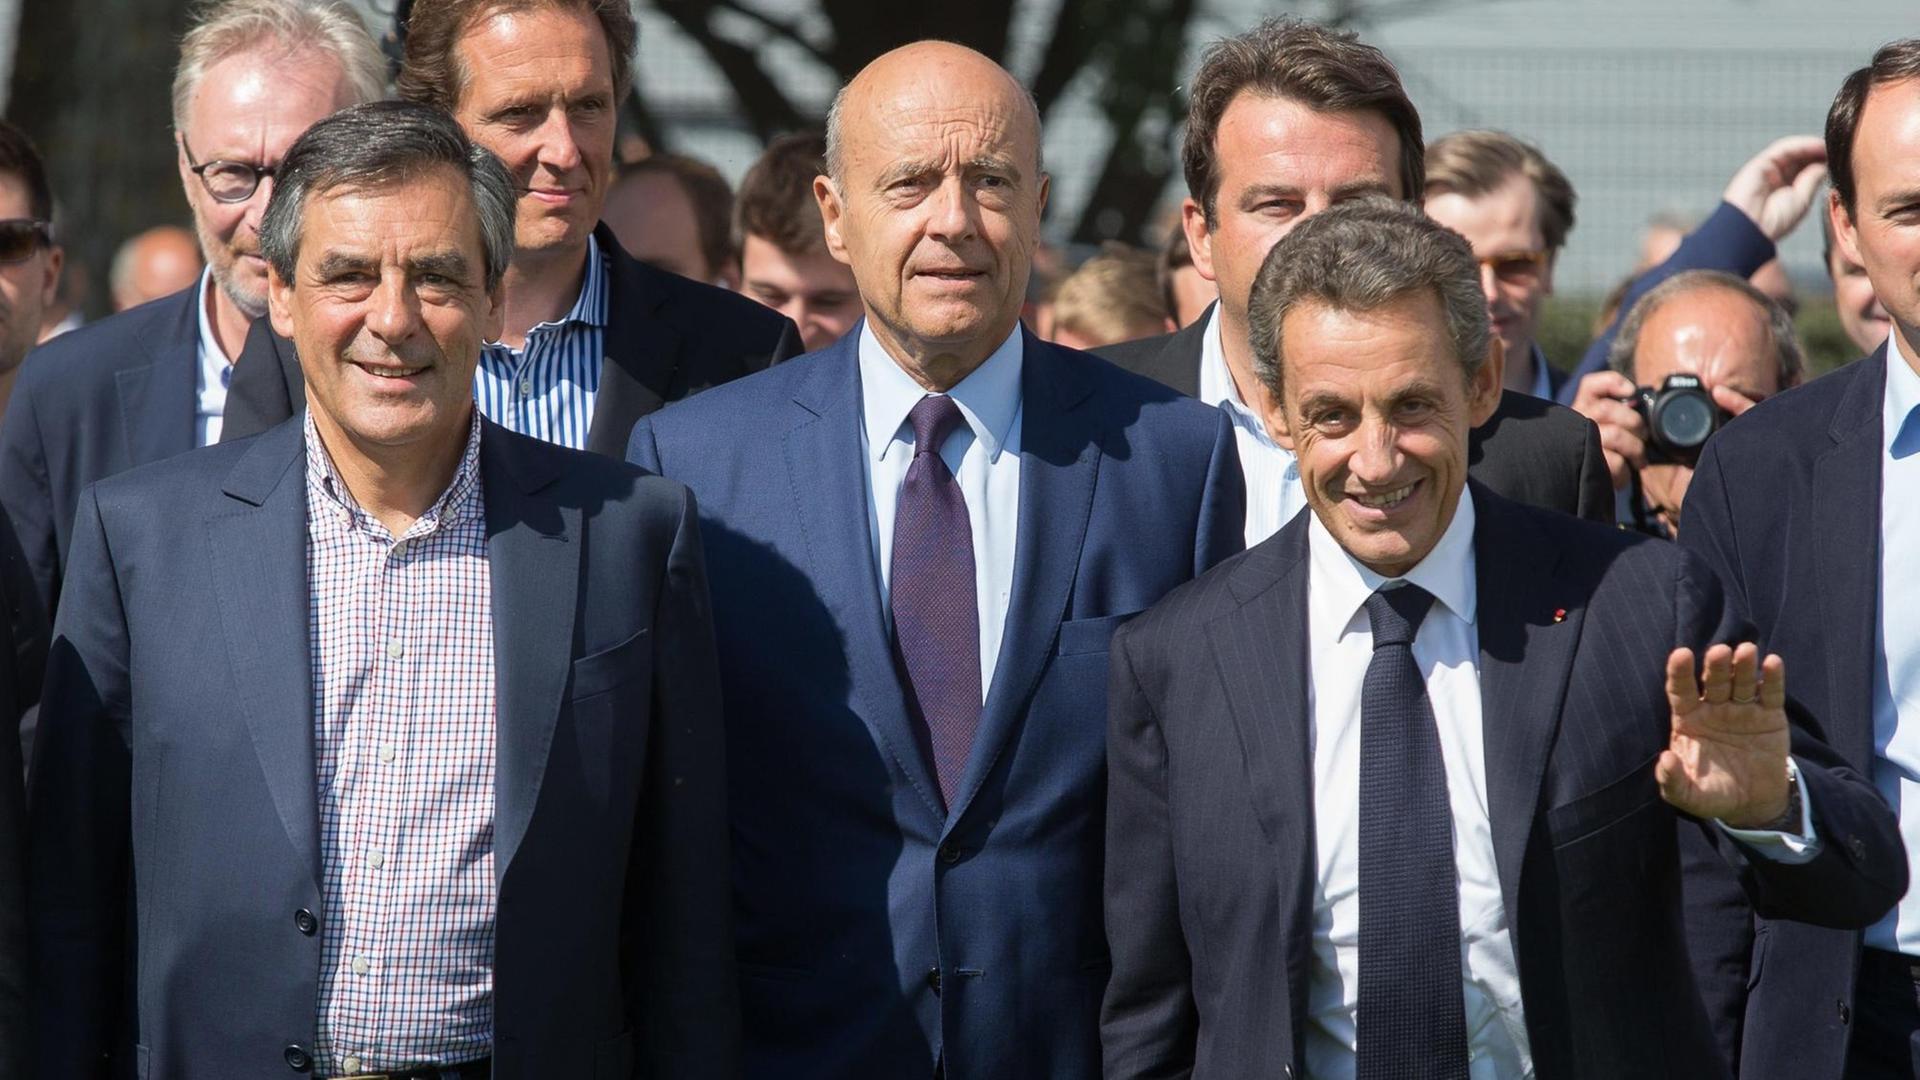 Blick auf die Präsidentschaftskandidaten der Konservativen für die Wahl 2017 Francois Fillon, Alain Juppé und Nicolas Sarkozy beim Treffen der Republikaner im Seebad La Baule 2015